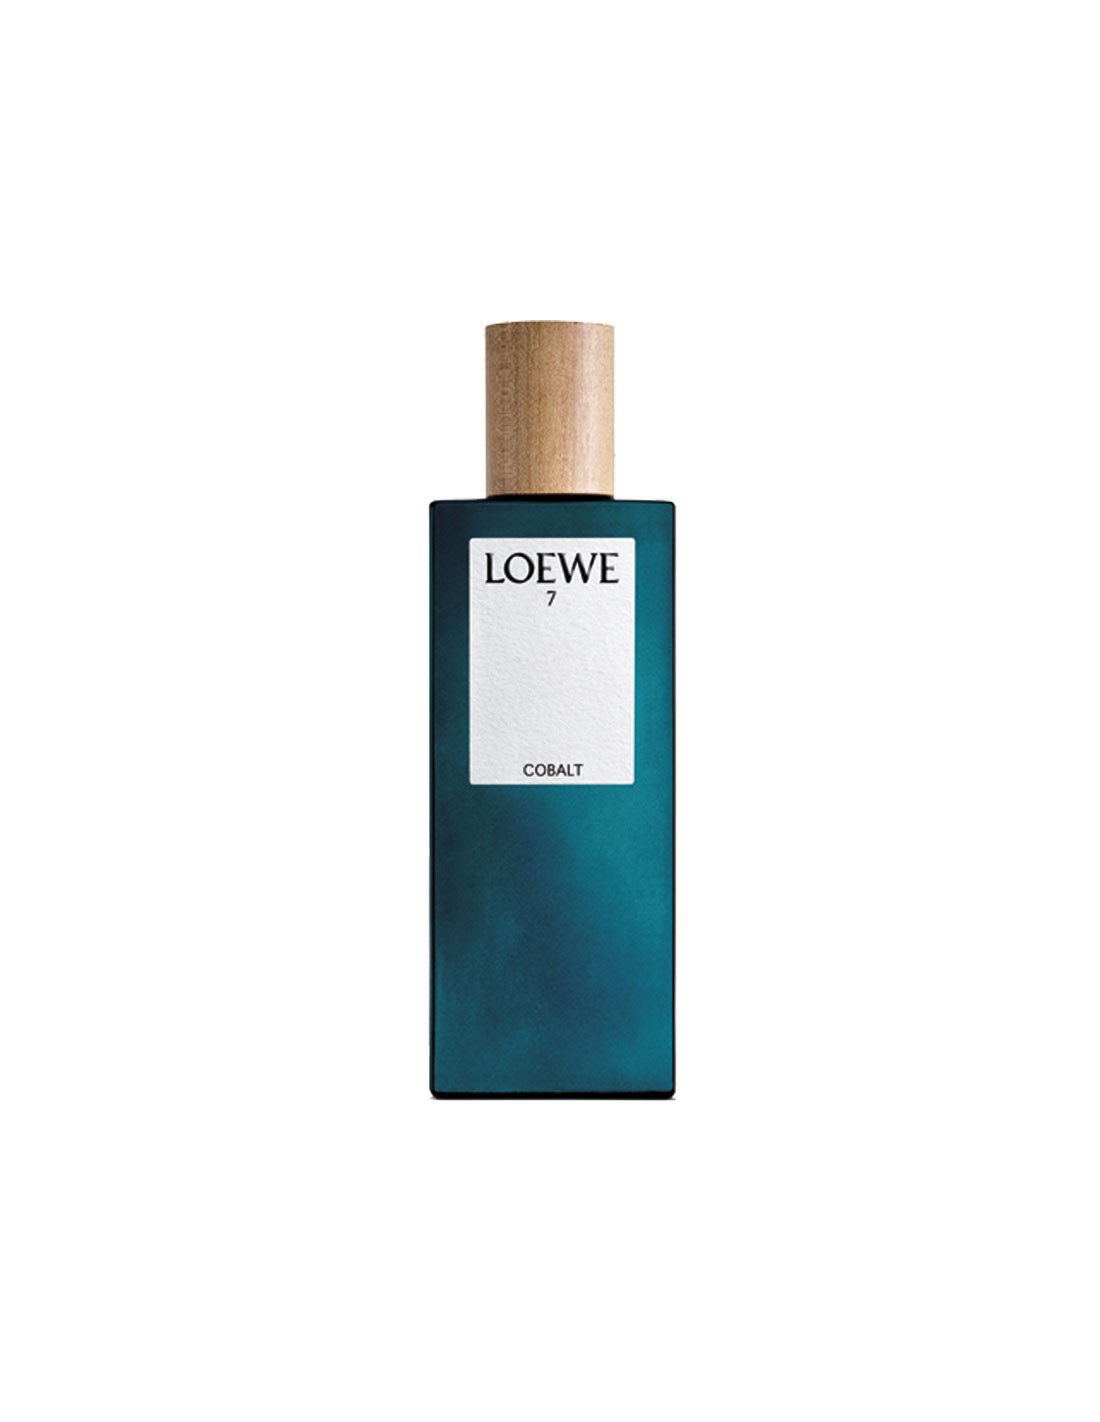 Loewe 7 Cobalt Парфюмированная вода-спрей 100 мл